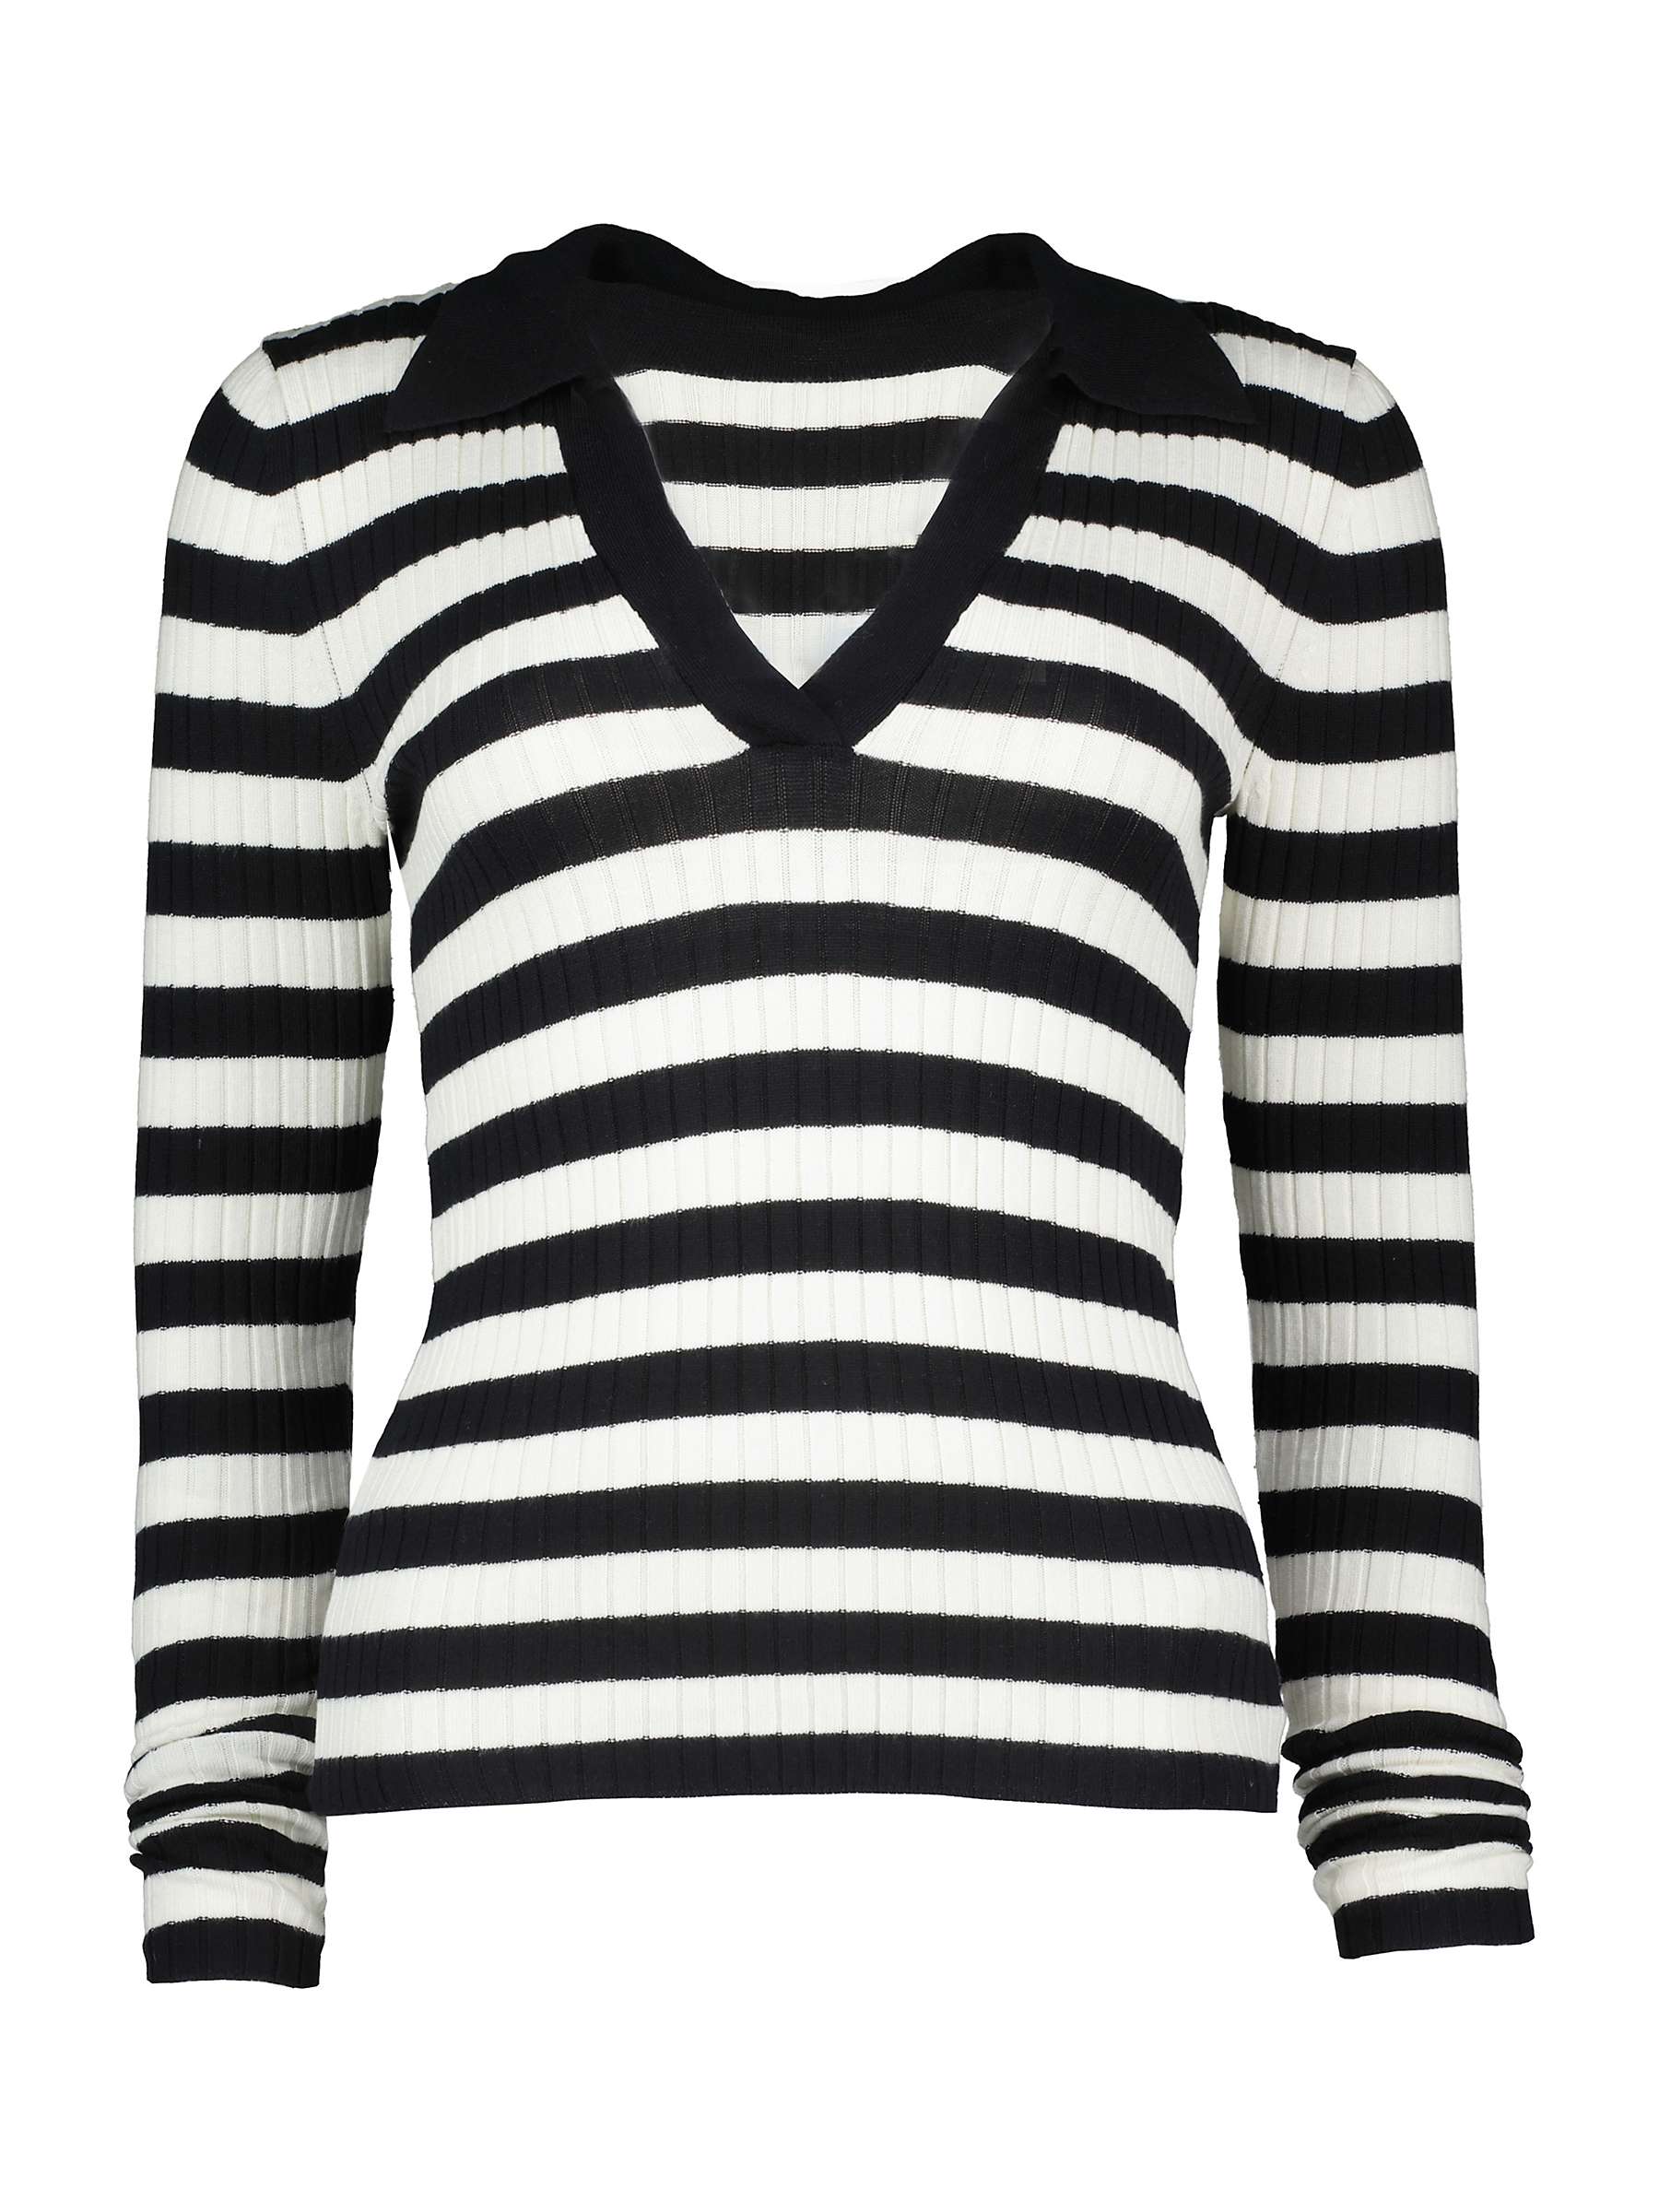 Buy Baukjen Jheel Striped Rib Knit Top, Black/Soft White Online at johnlewis.com